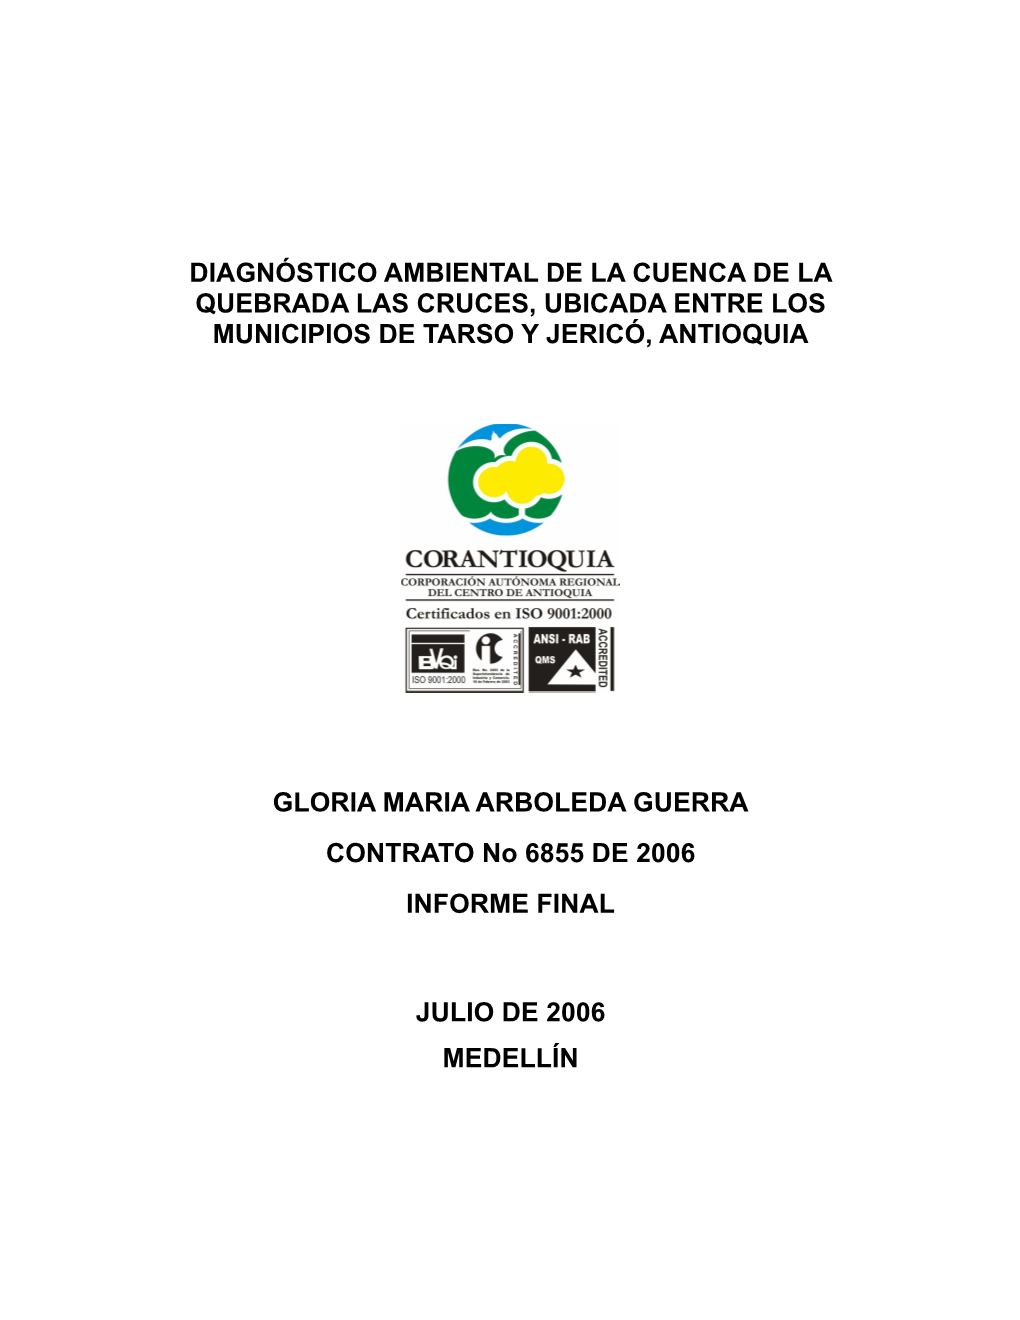 Diagnóstico Ambiental De La Cuenca De La Quebrada Las Cruces, Ubicada Entre Los Municipios De Tarso Y Jericó, Antioquia